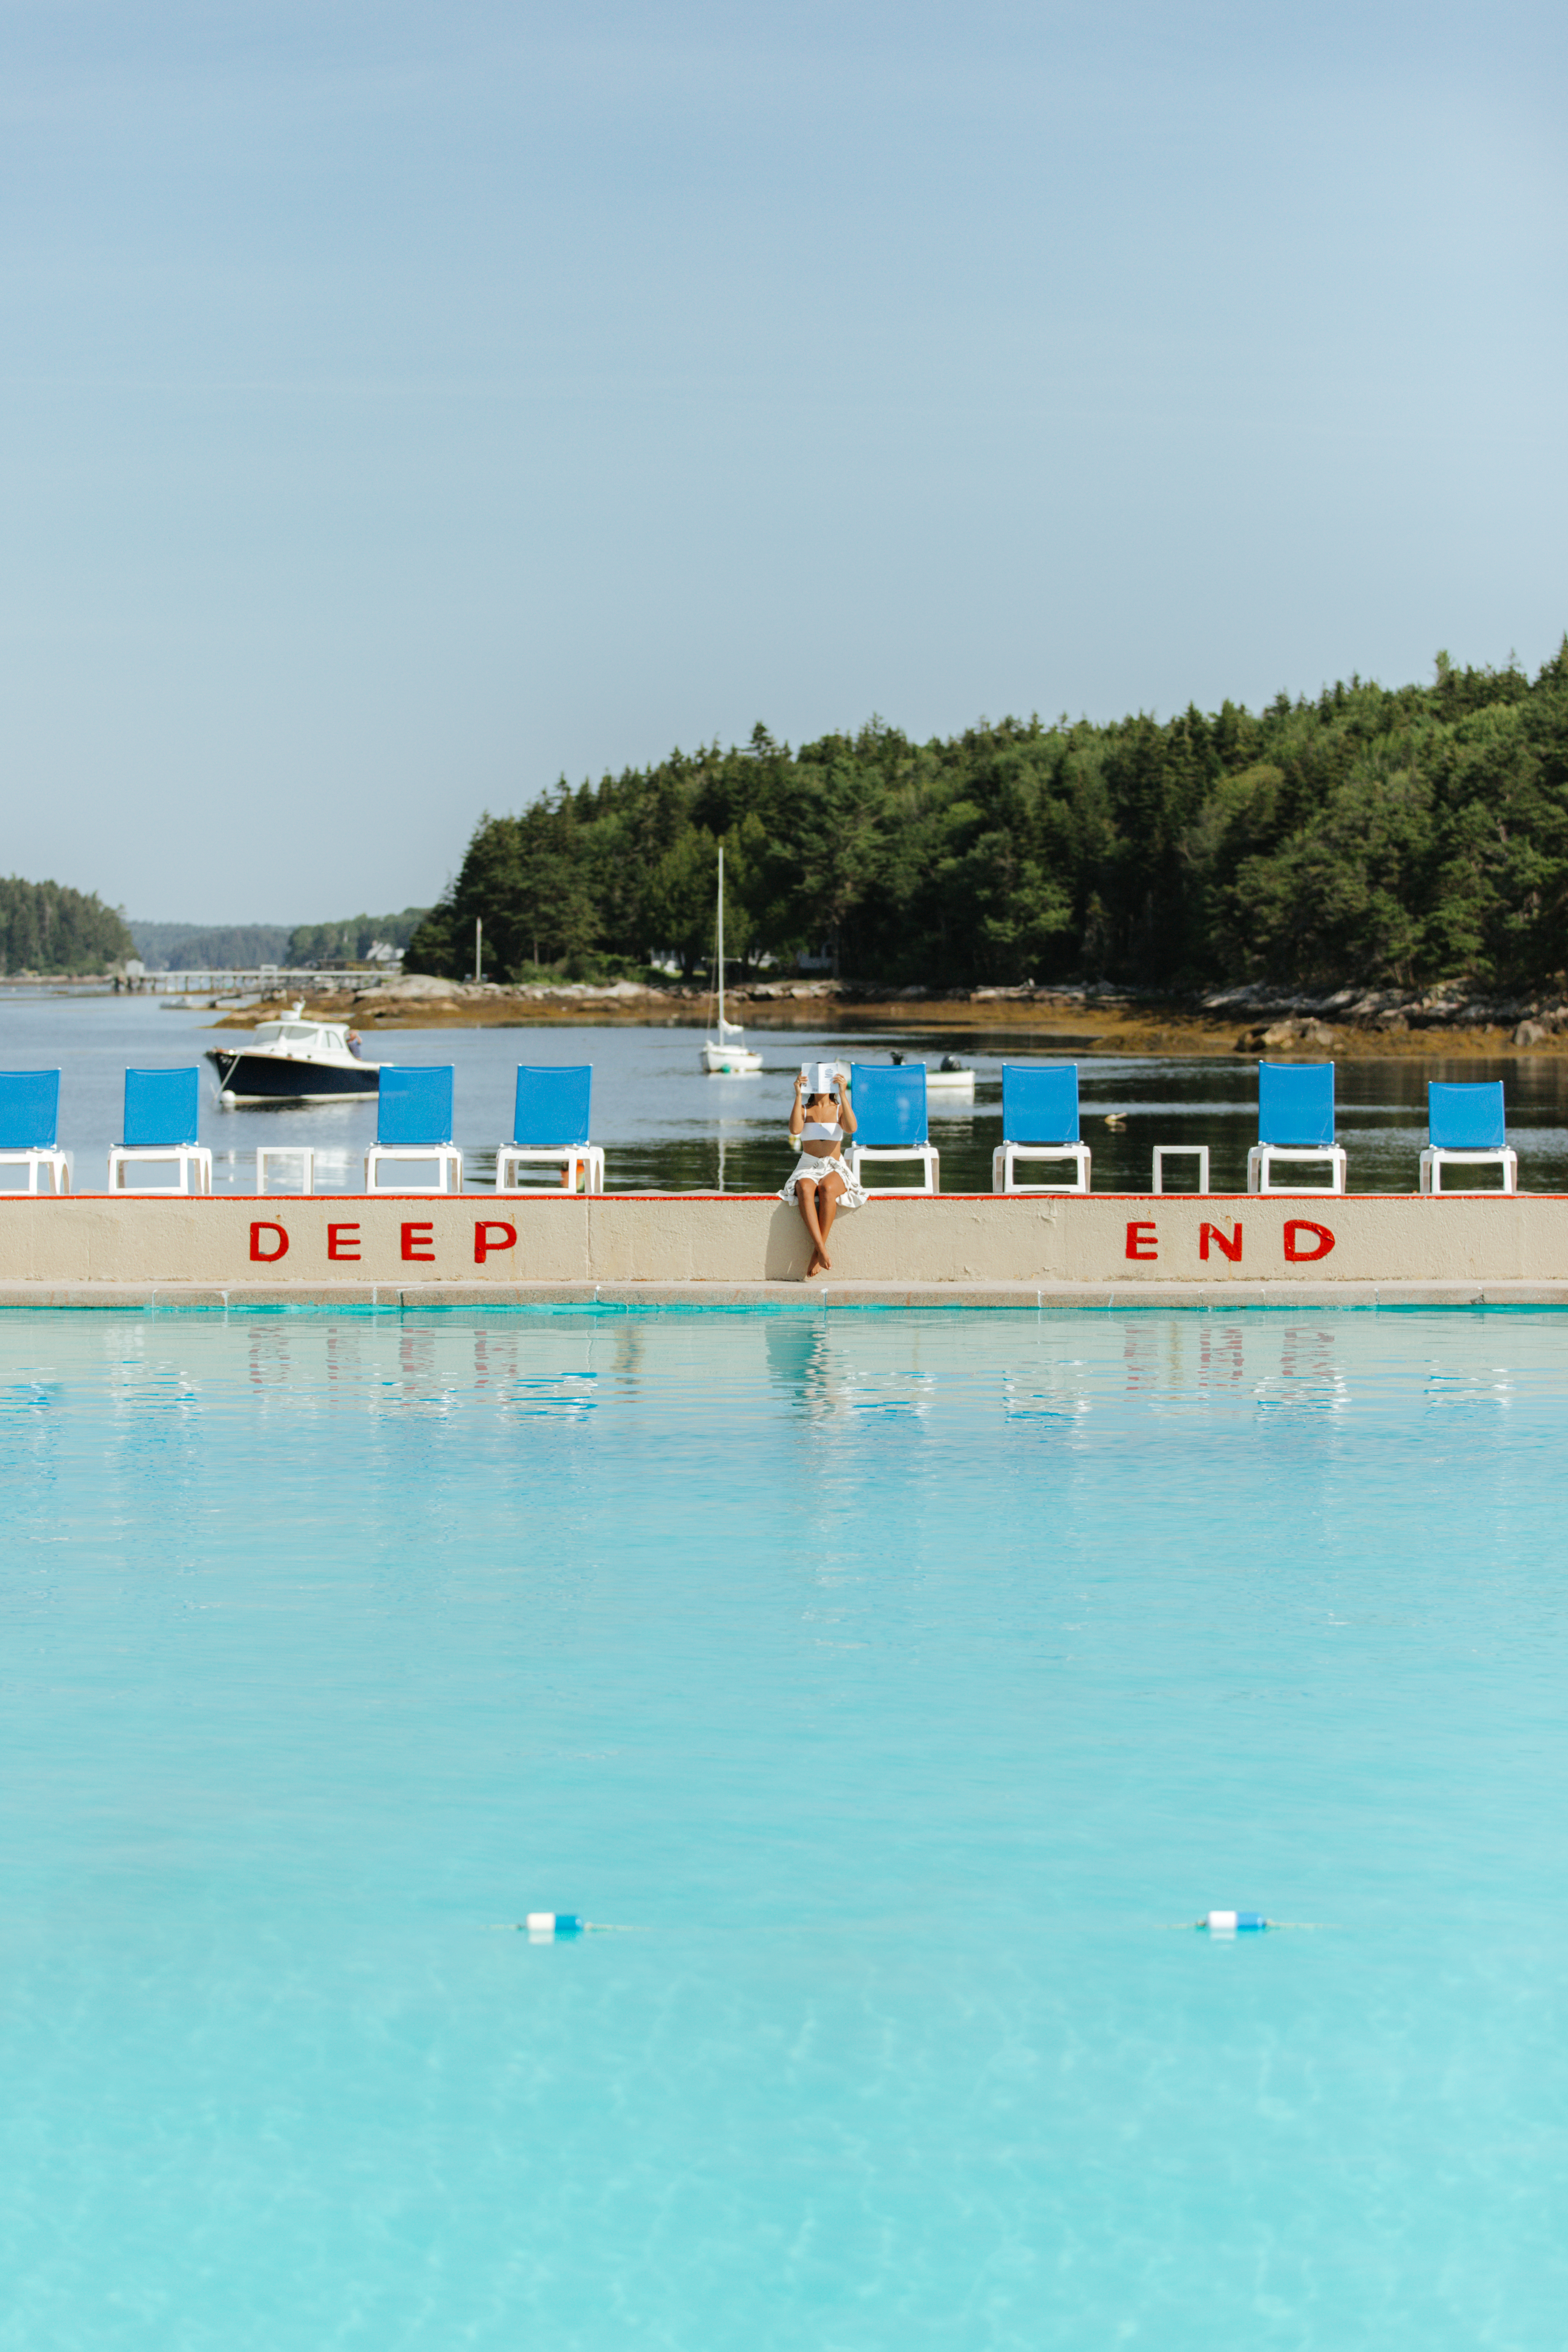 Sebasco harbor resort pool.